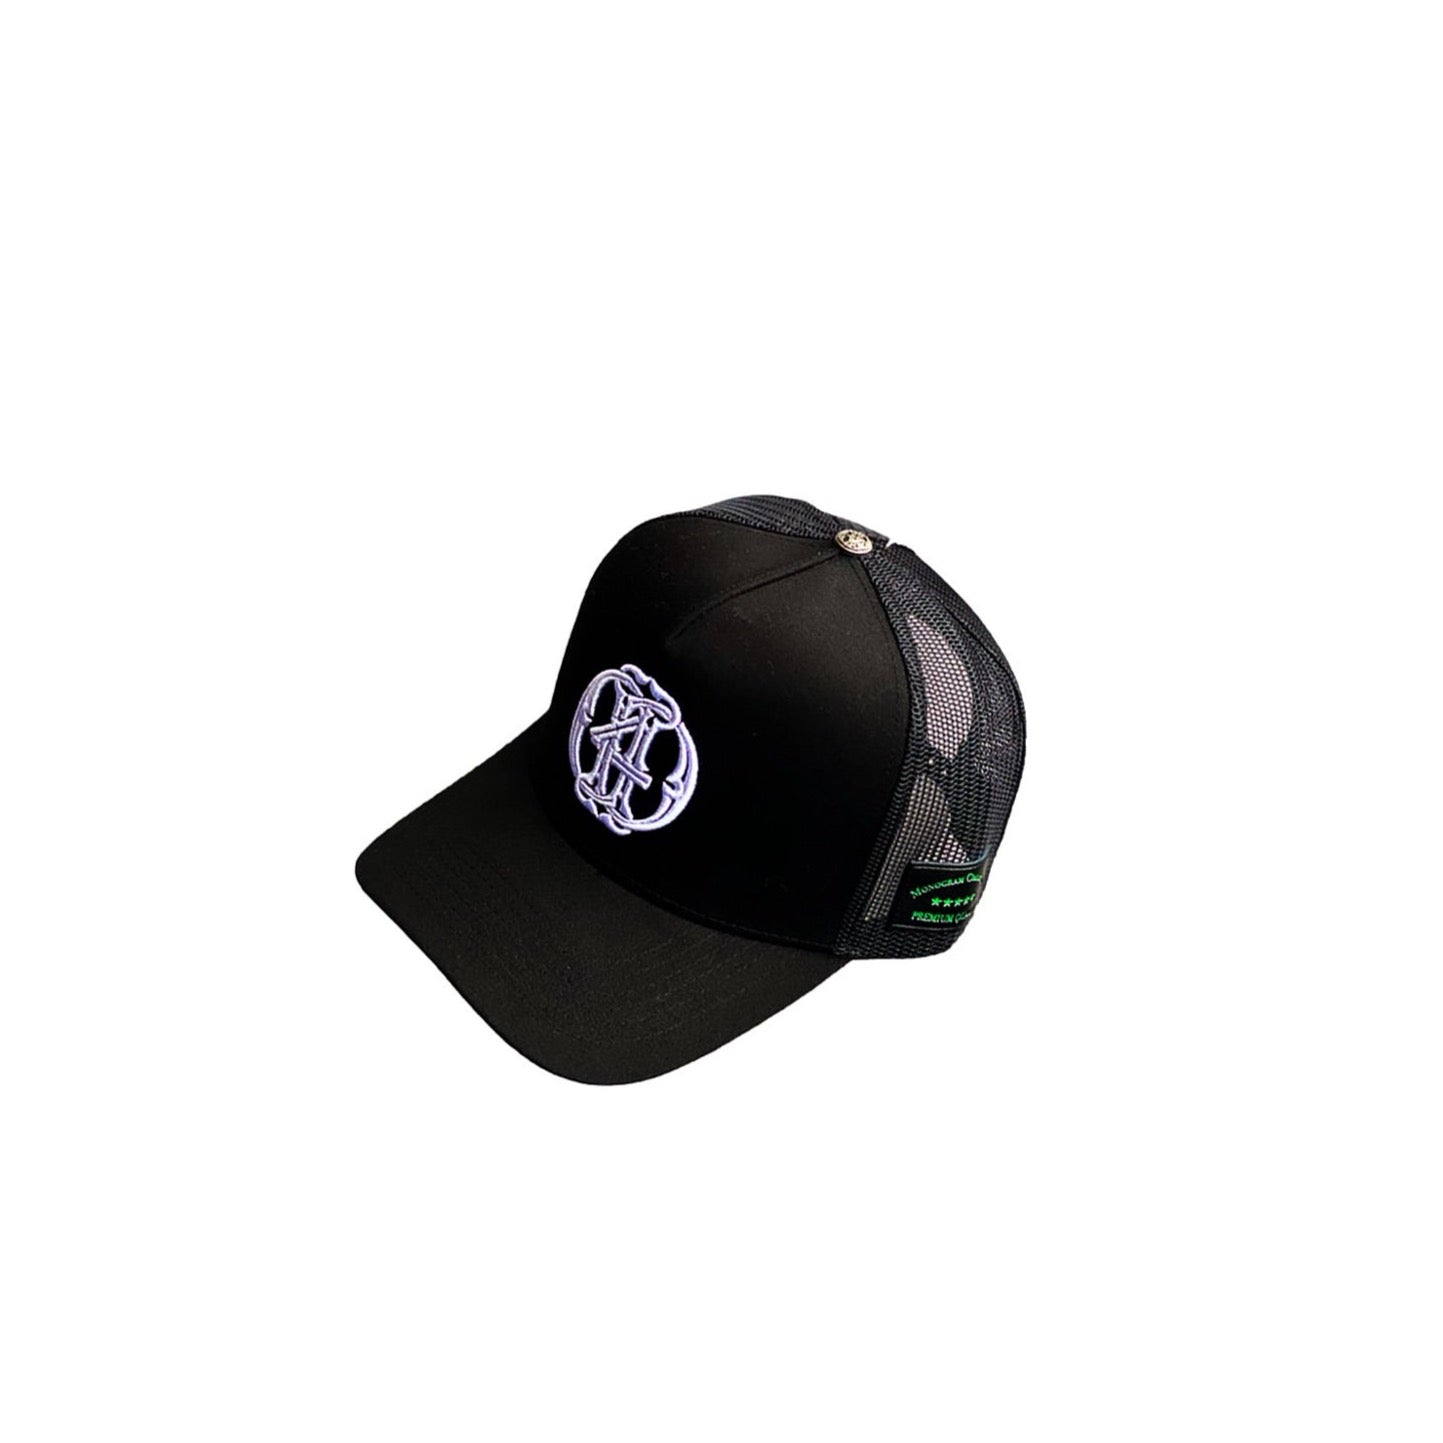 Monogram Black Trucker Hat - Death4Dollars